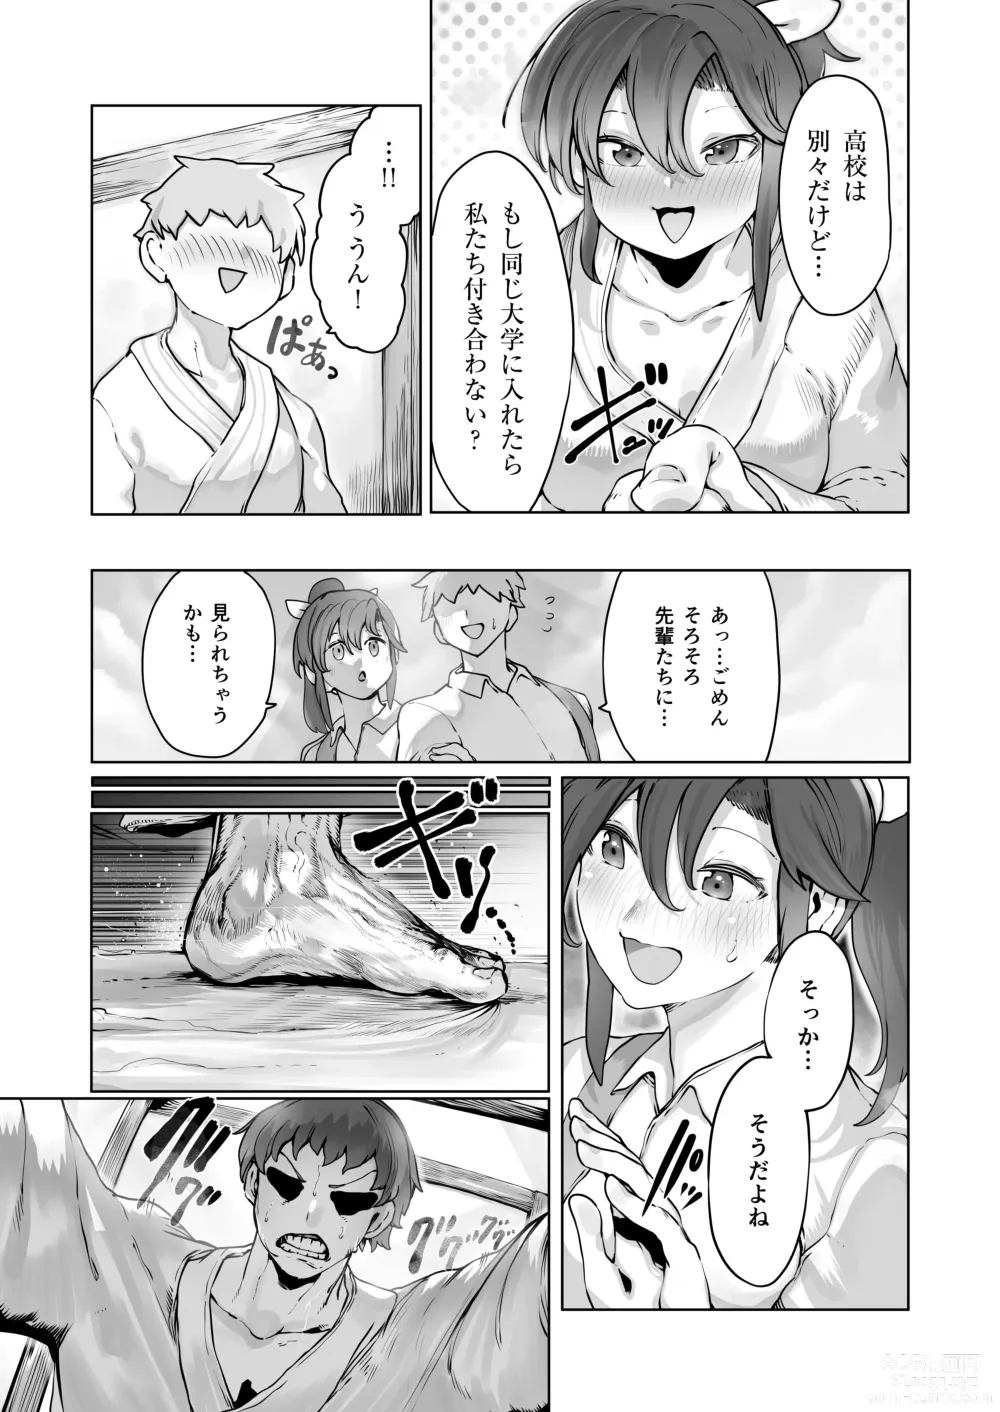 Page 4 of doujinshi Yozora no Tsuki ga Ochiru made